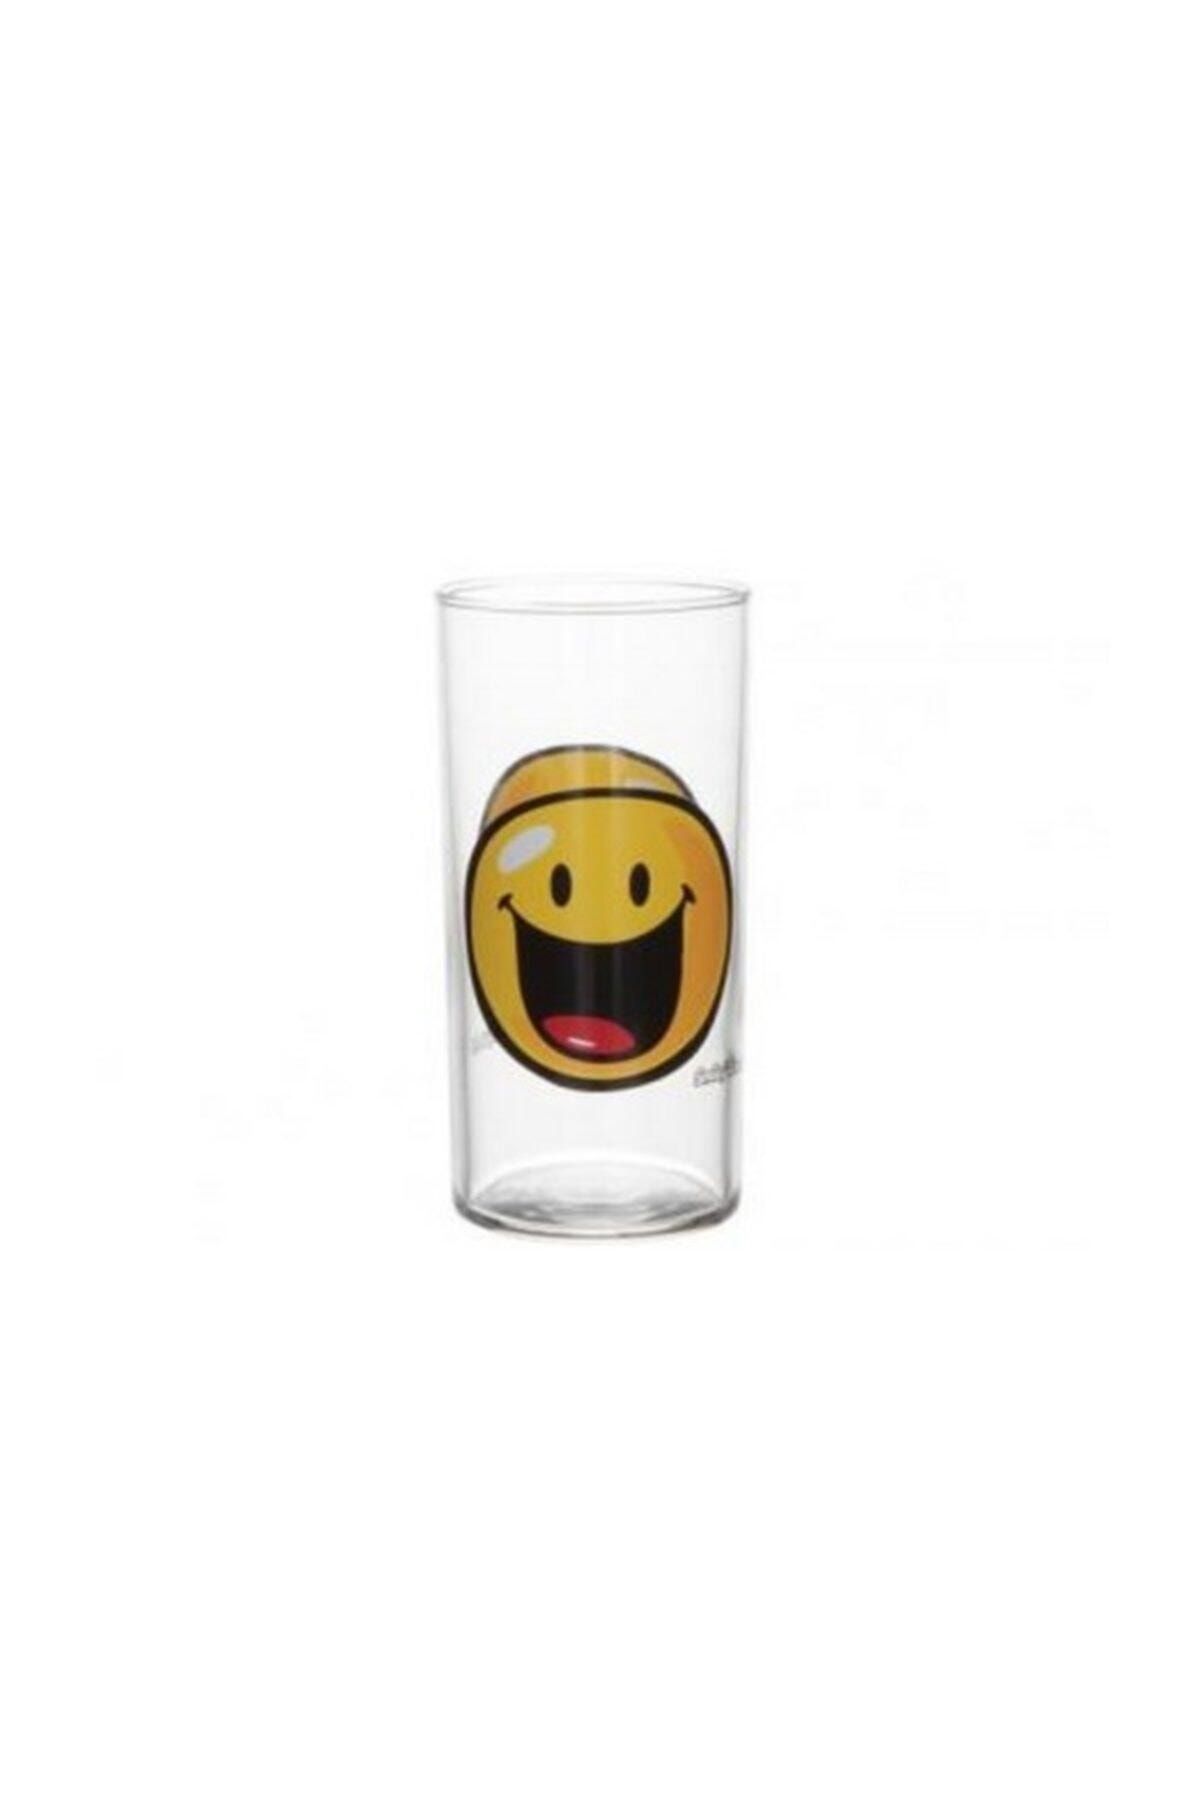 ANCEL Luminarc Smiley World Meşrubat Bardağı 27 cl